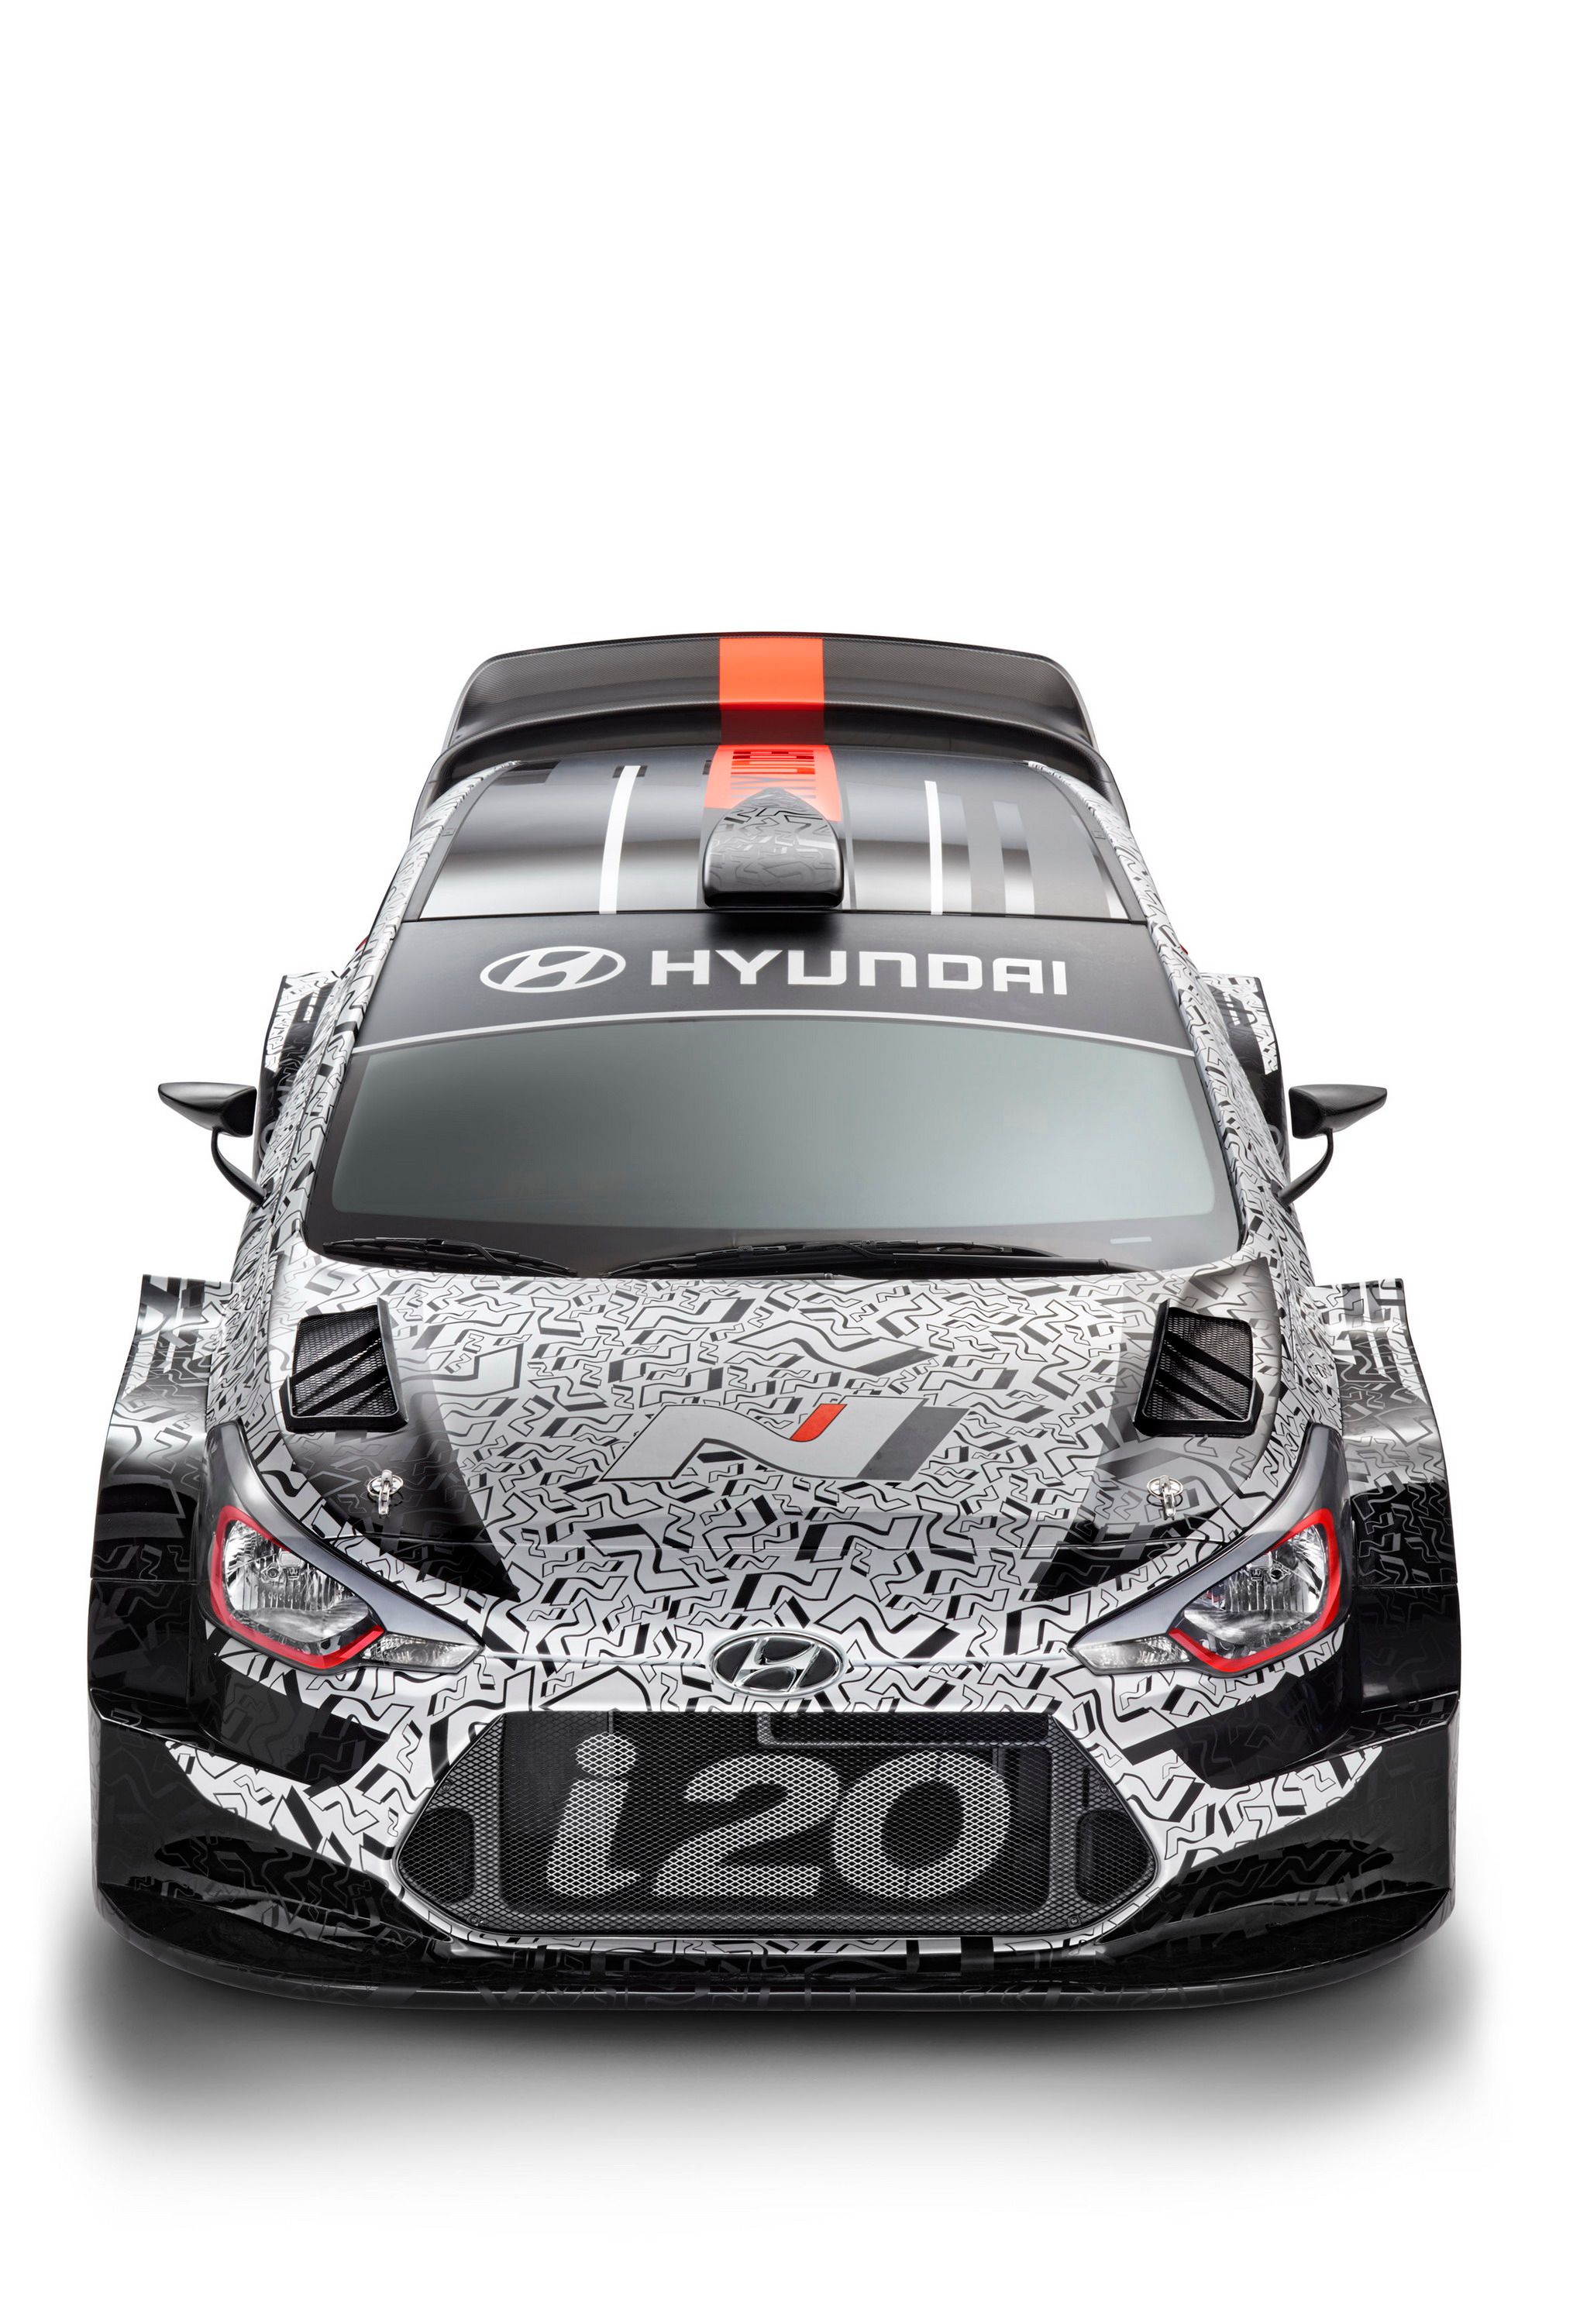 2016 Hyundai i20 WRC